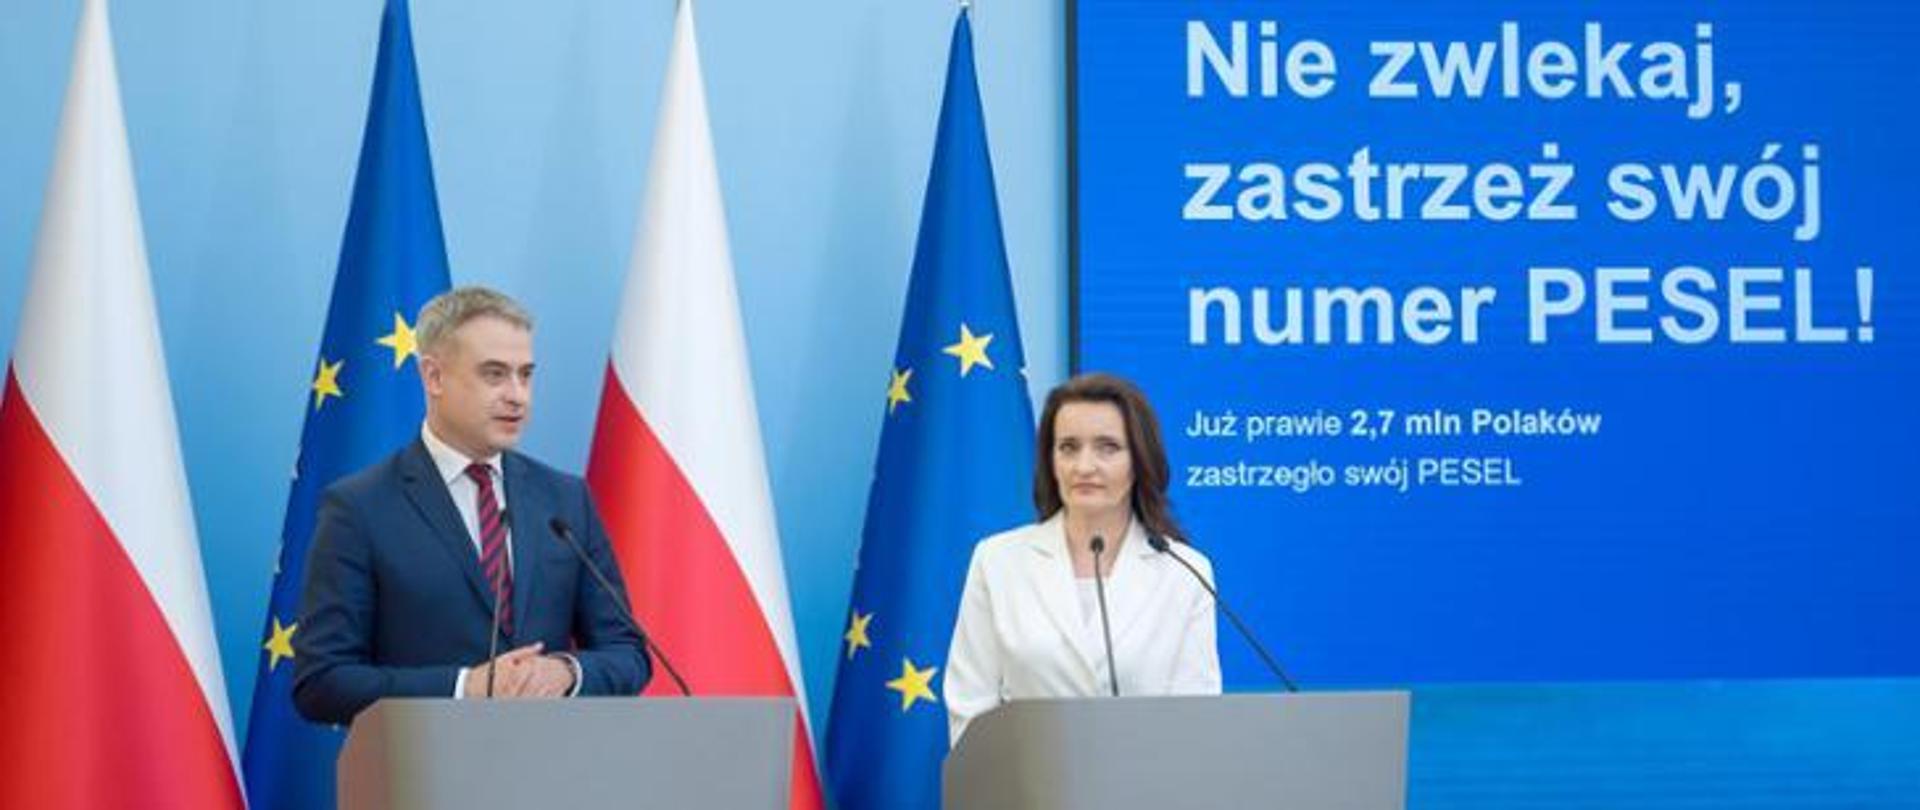 Zdjęcie premiera Krzysztofa Gawkowskiego na tle flag Polski oraz Unii Europejskiej 